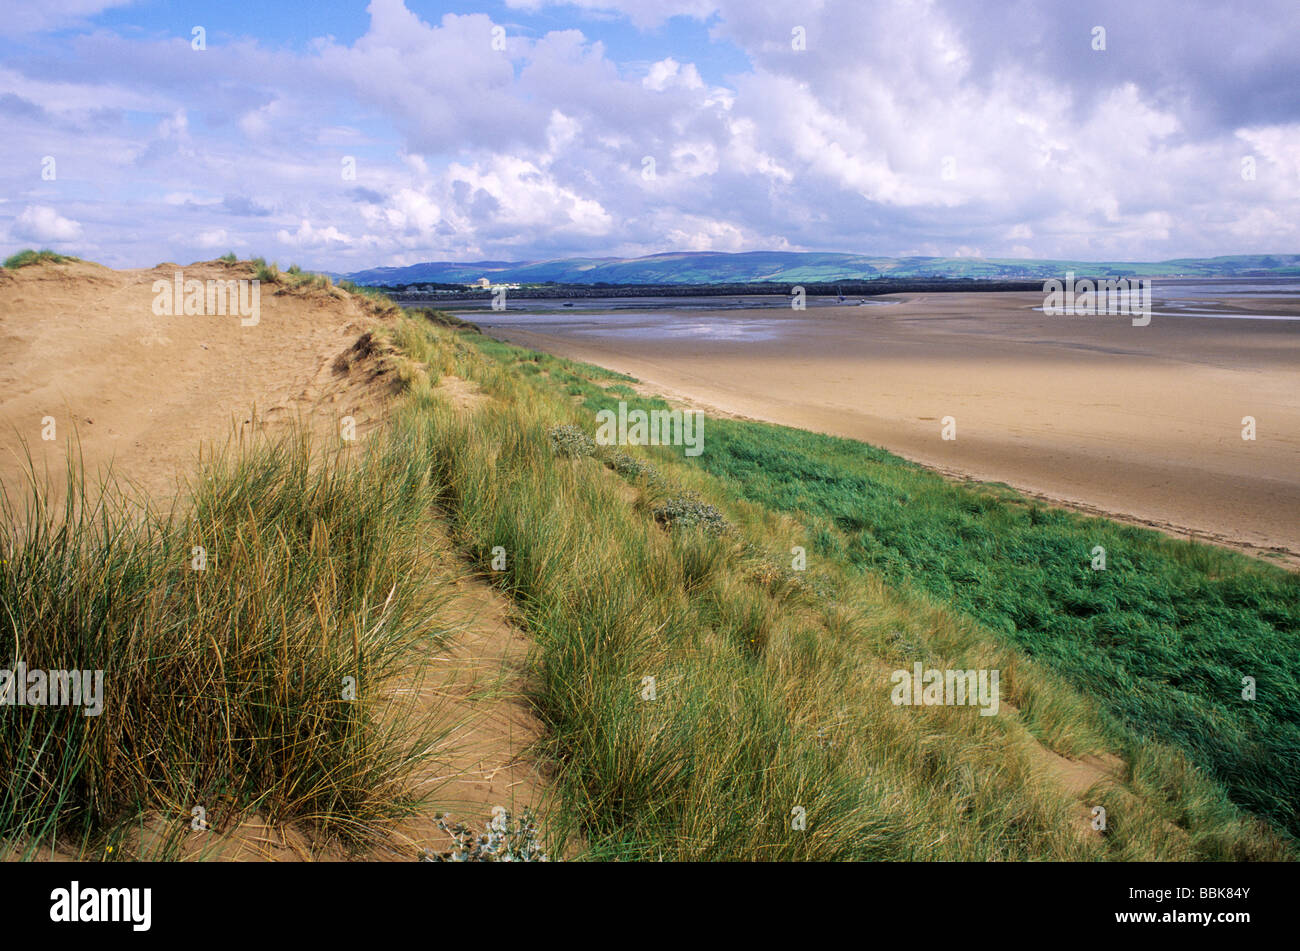 Altezze Haverigg Cumbria Duddon Sands dune di sabbia spiaggia costa inglese paesaggi costieri REGNO UNITO Inghilterra marram grass mare Foto Stock